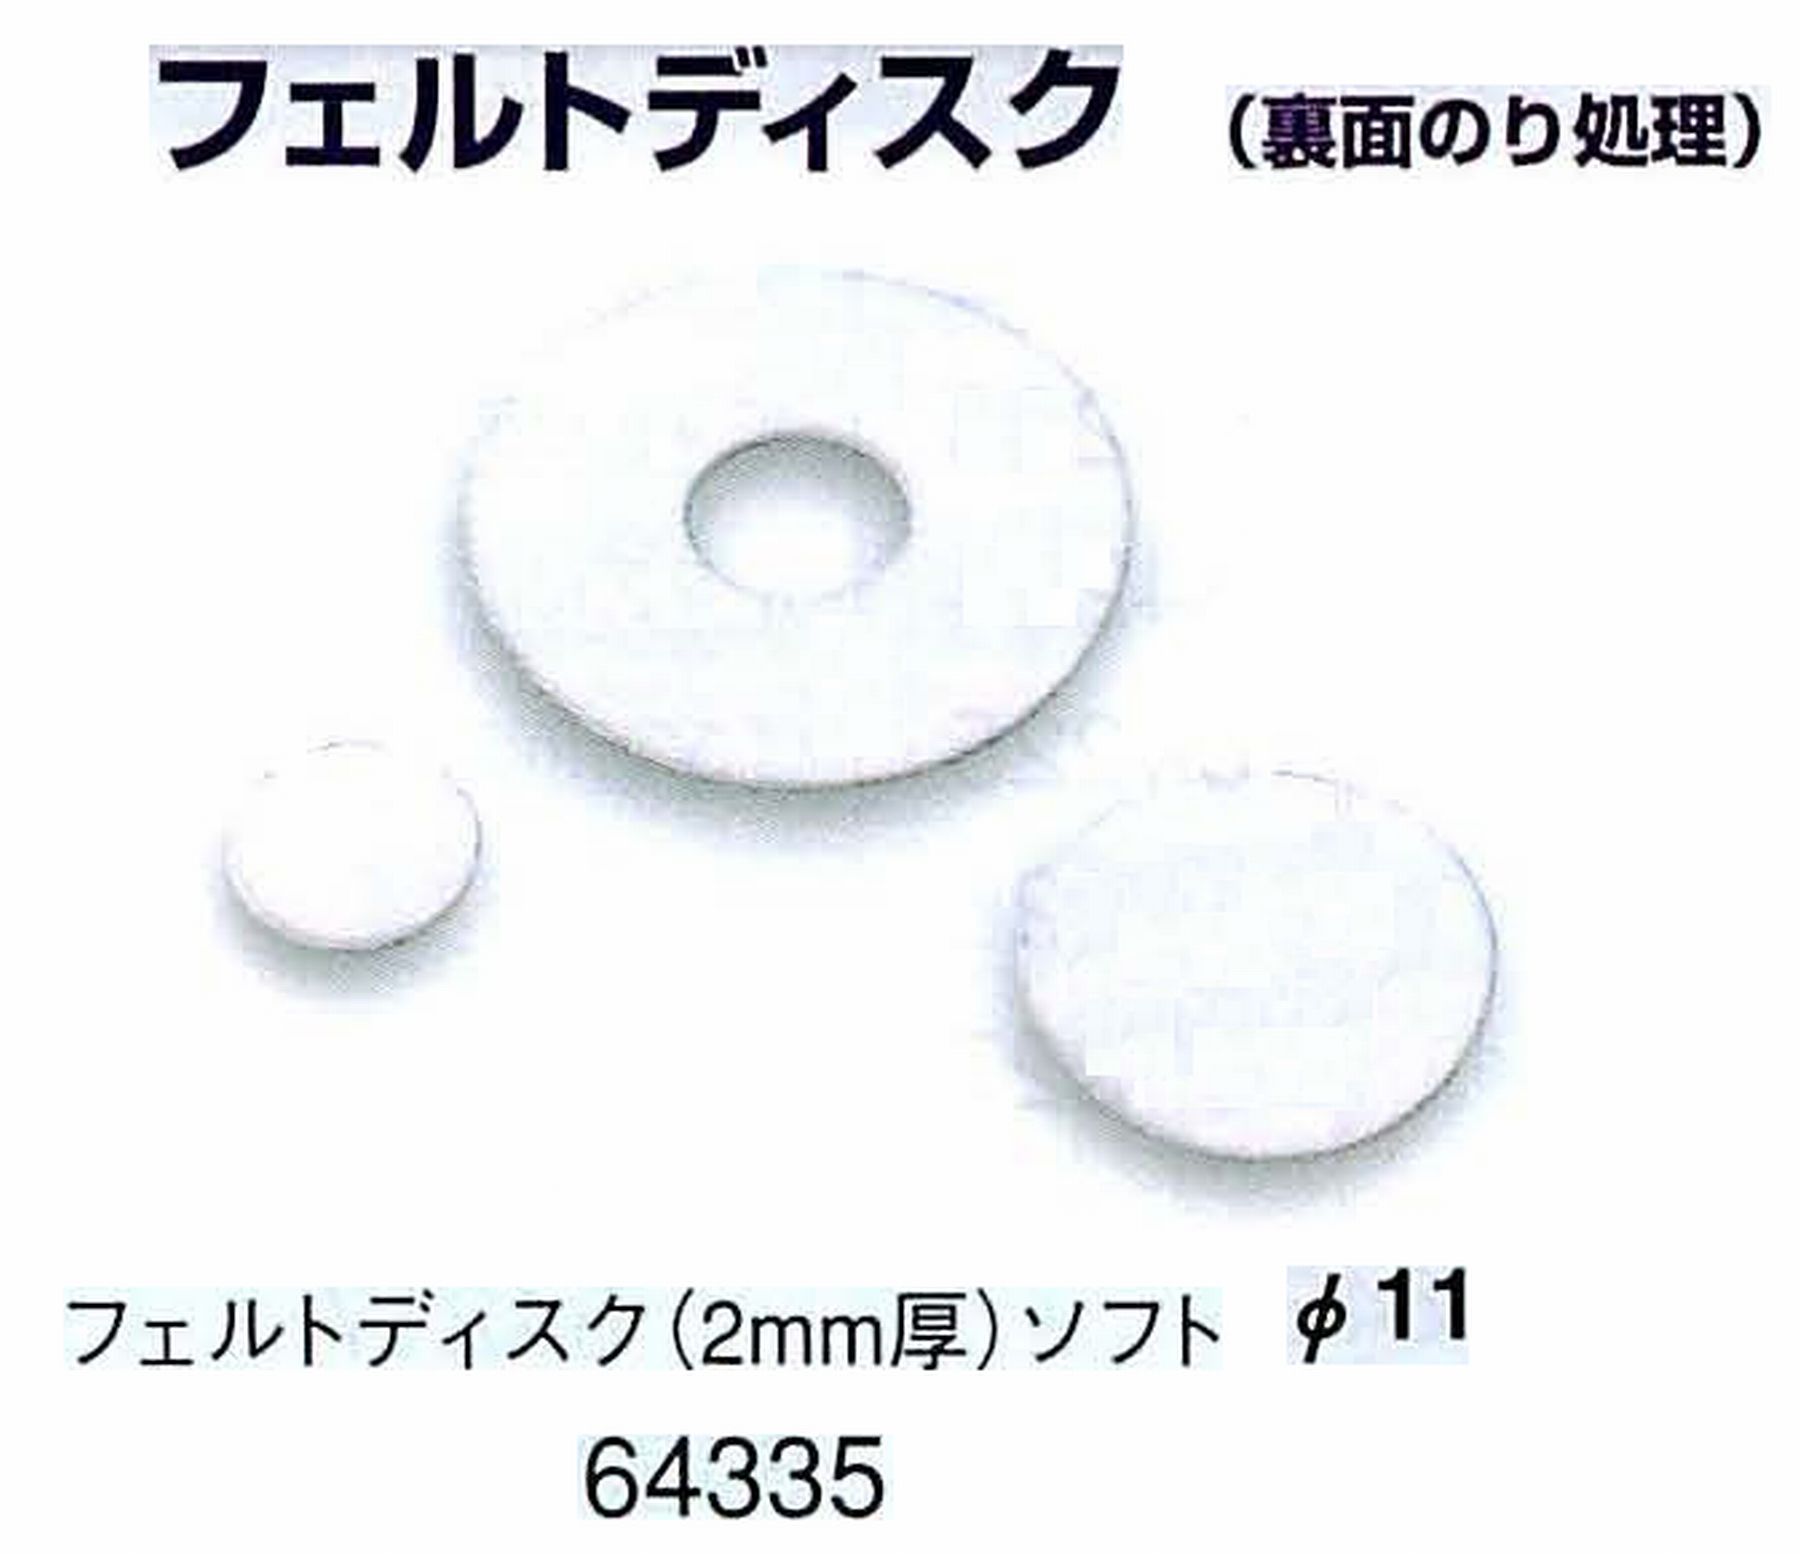 ナカニシ/NAKANISHI アングルグラインダ(電動・エアー) アングルアタッチメント専用工具 フェルトディスク(裏面のり処理) 64335